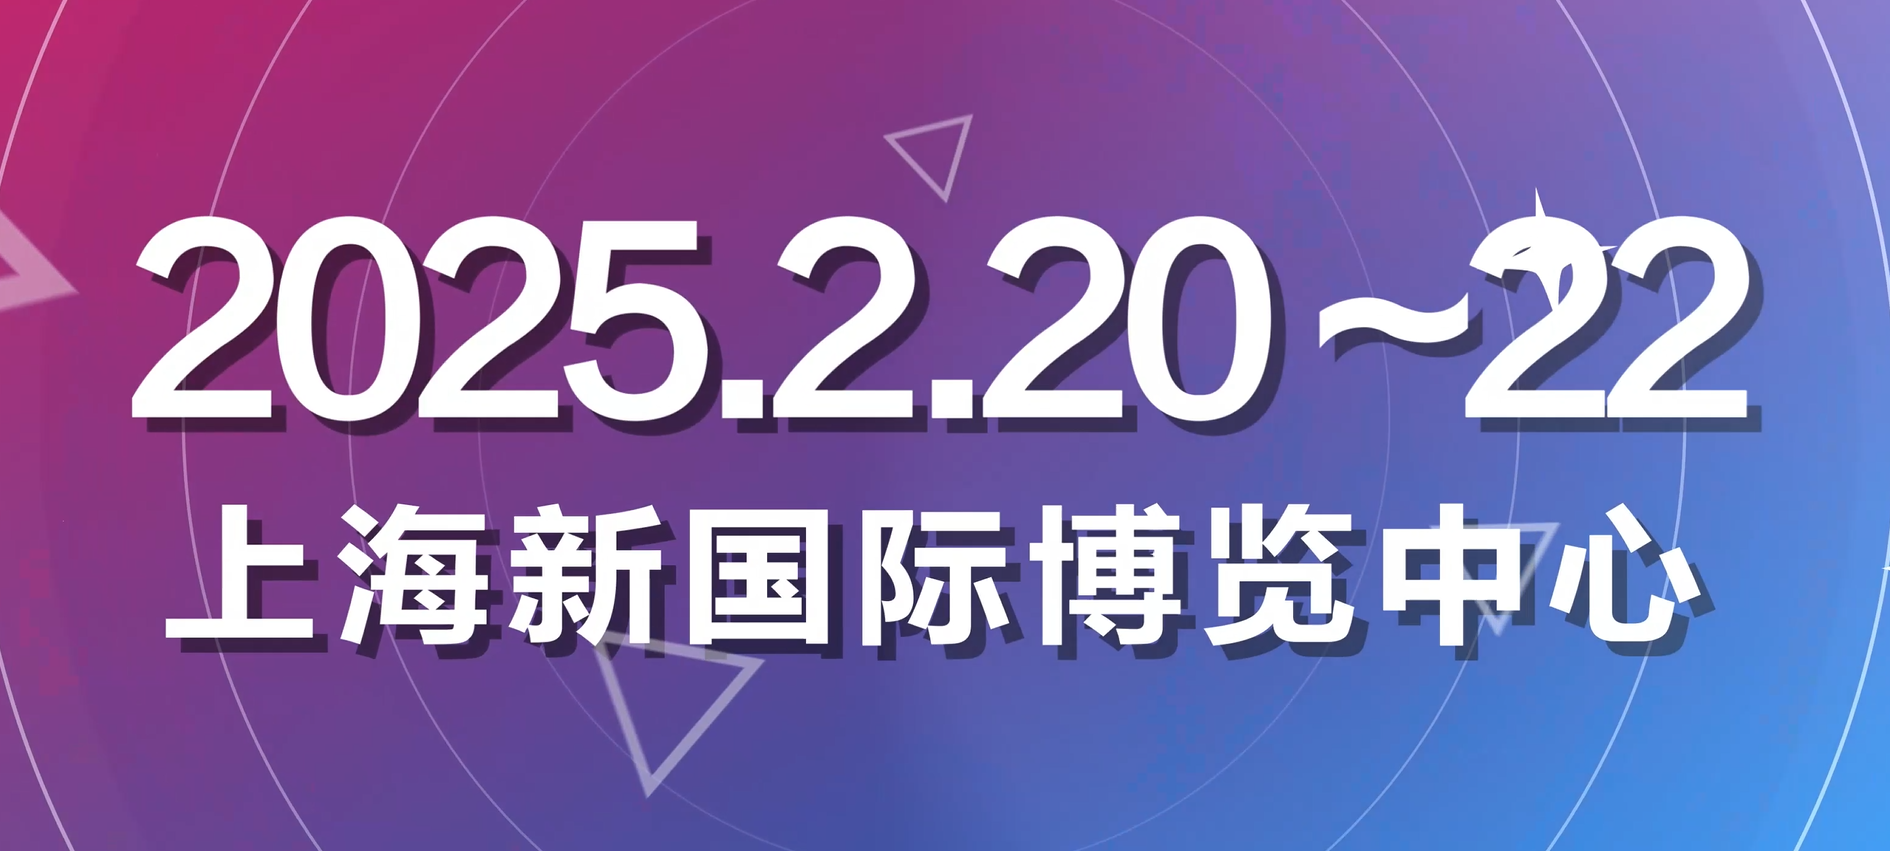 关于举办“第二十三届中国(上海)国际眼镜业展览会”的通知